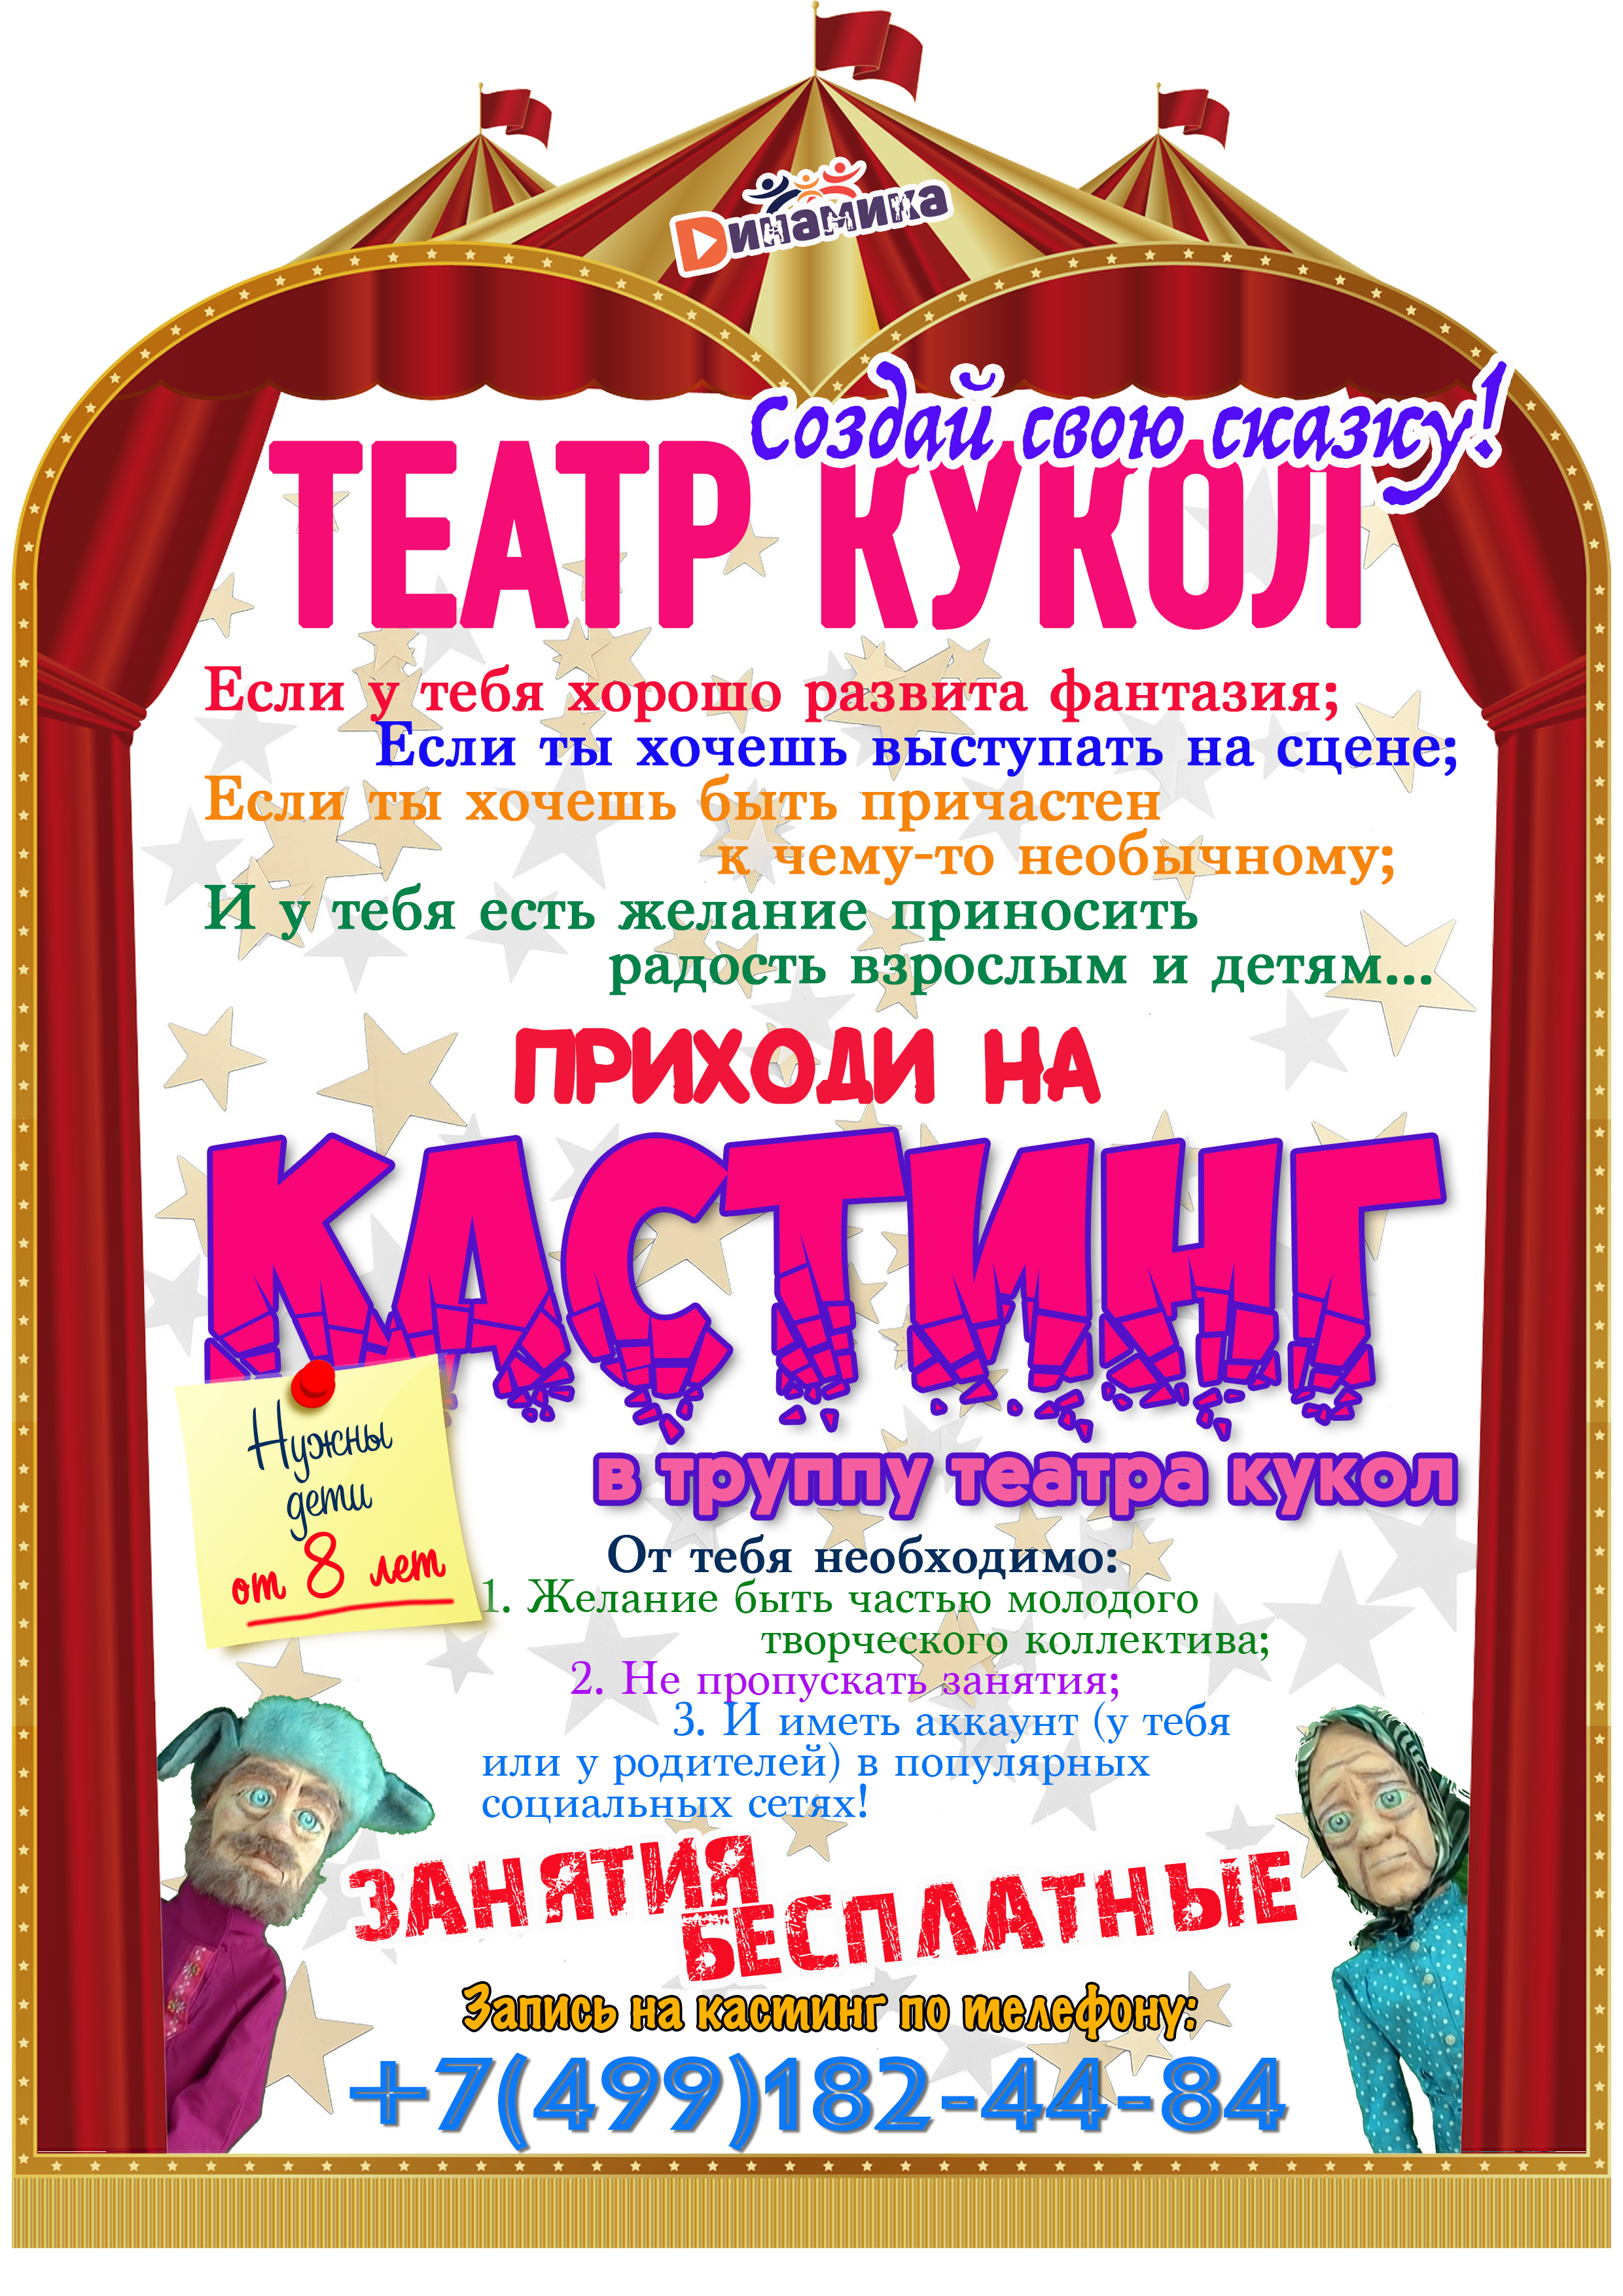 Театр кукол_кастинг